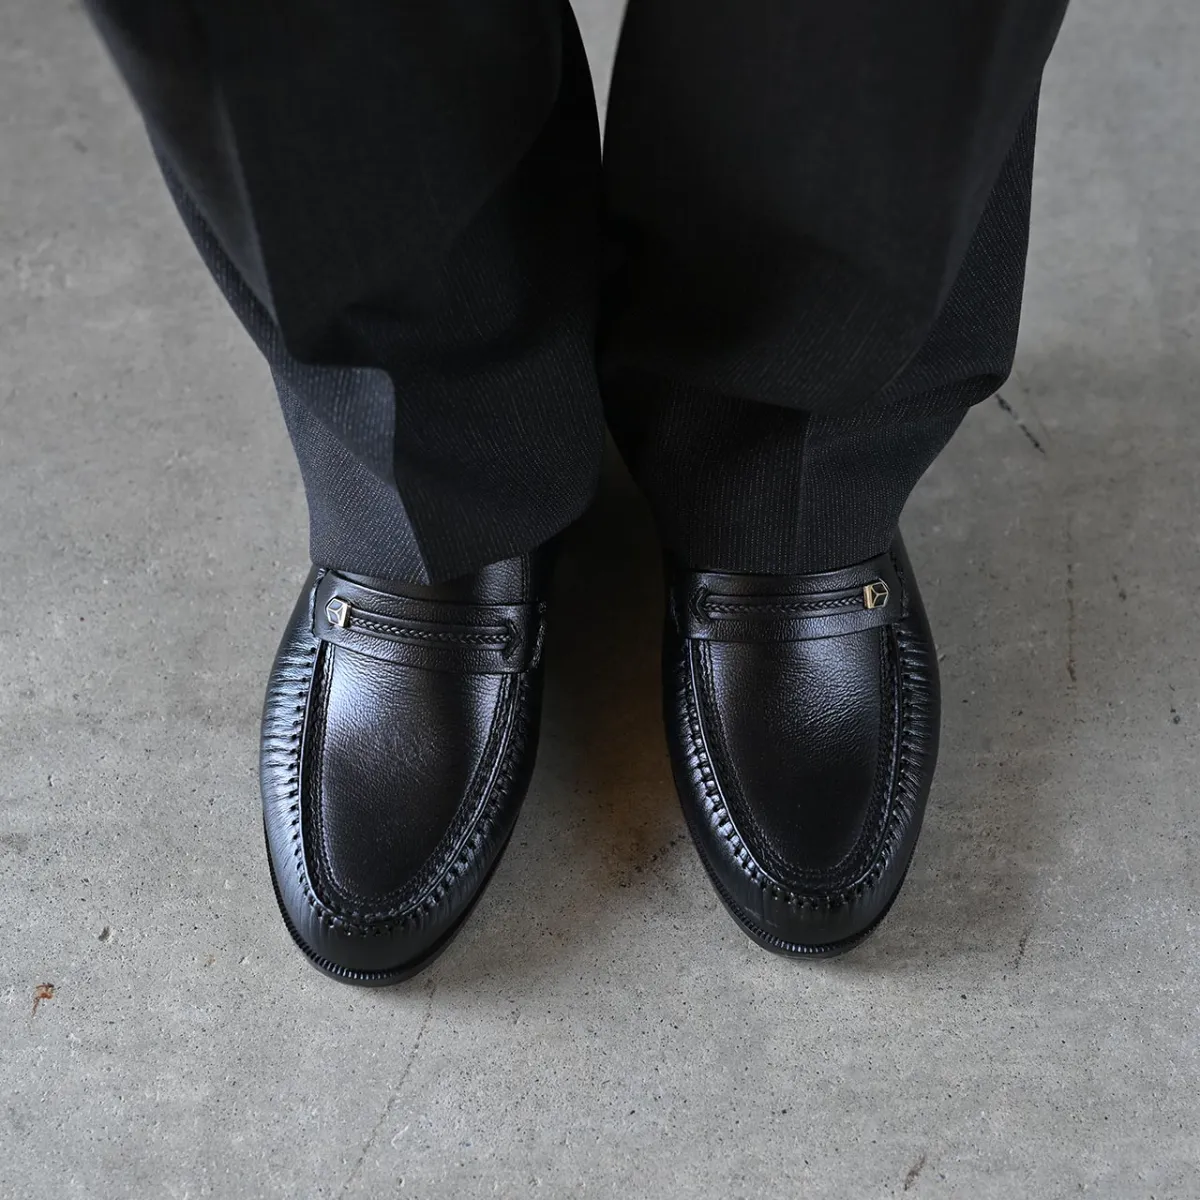 磁気付紳士(メンズ)靴-お多福産業株式会社-GR-110